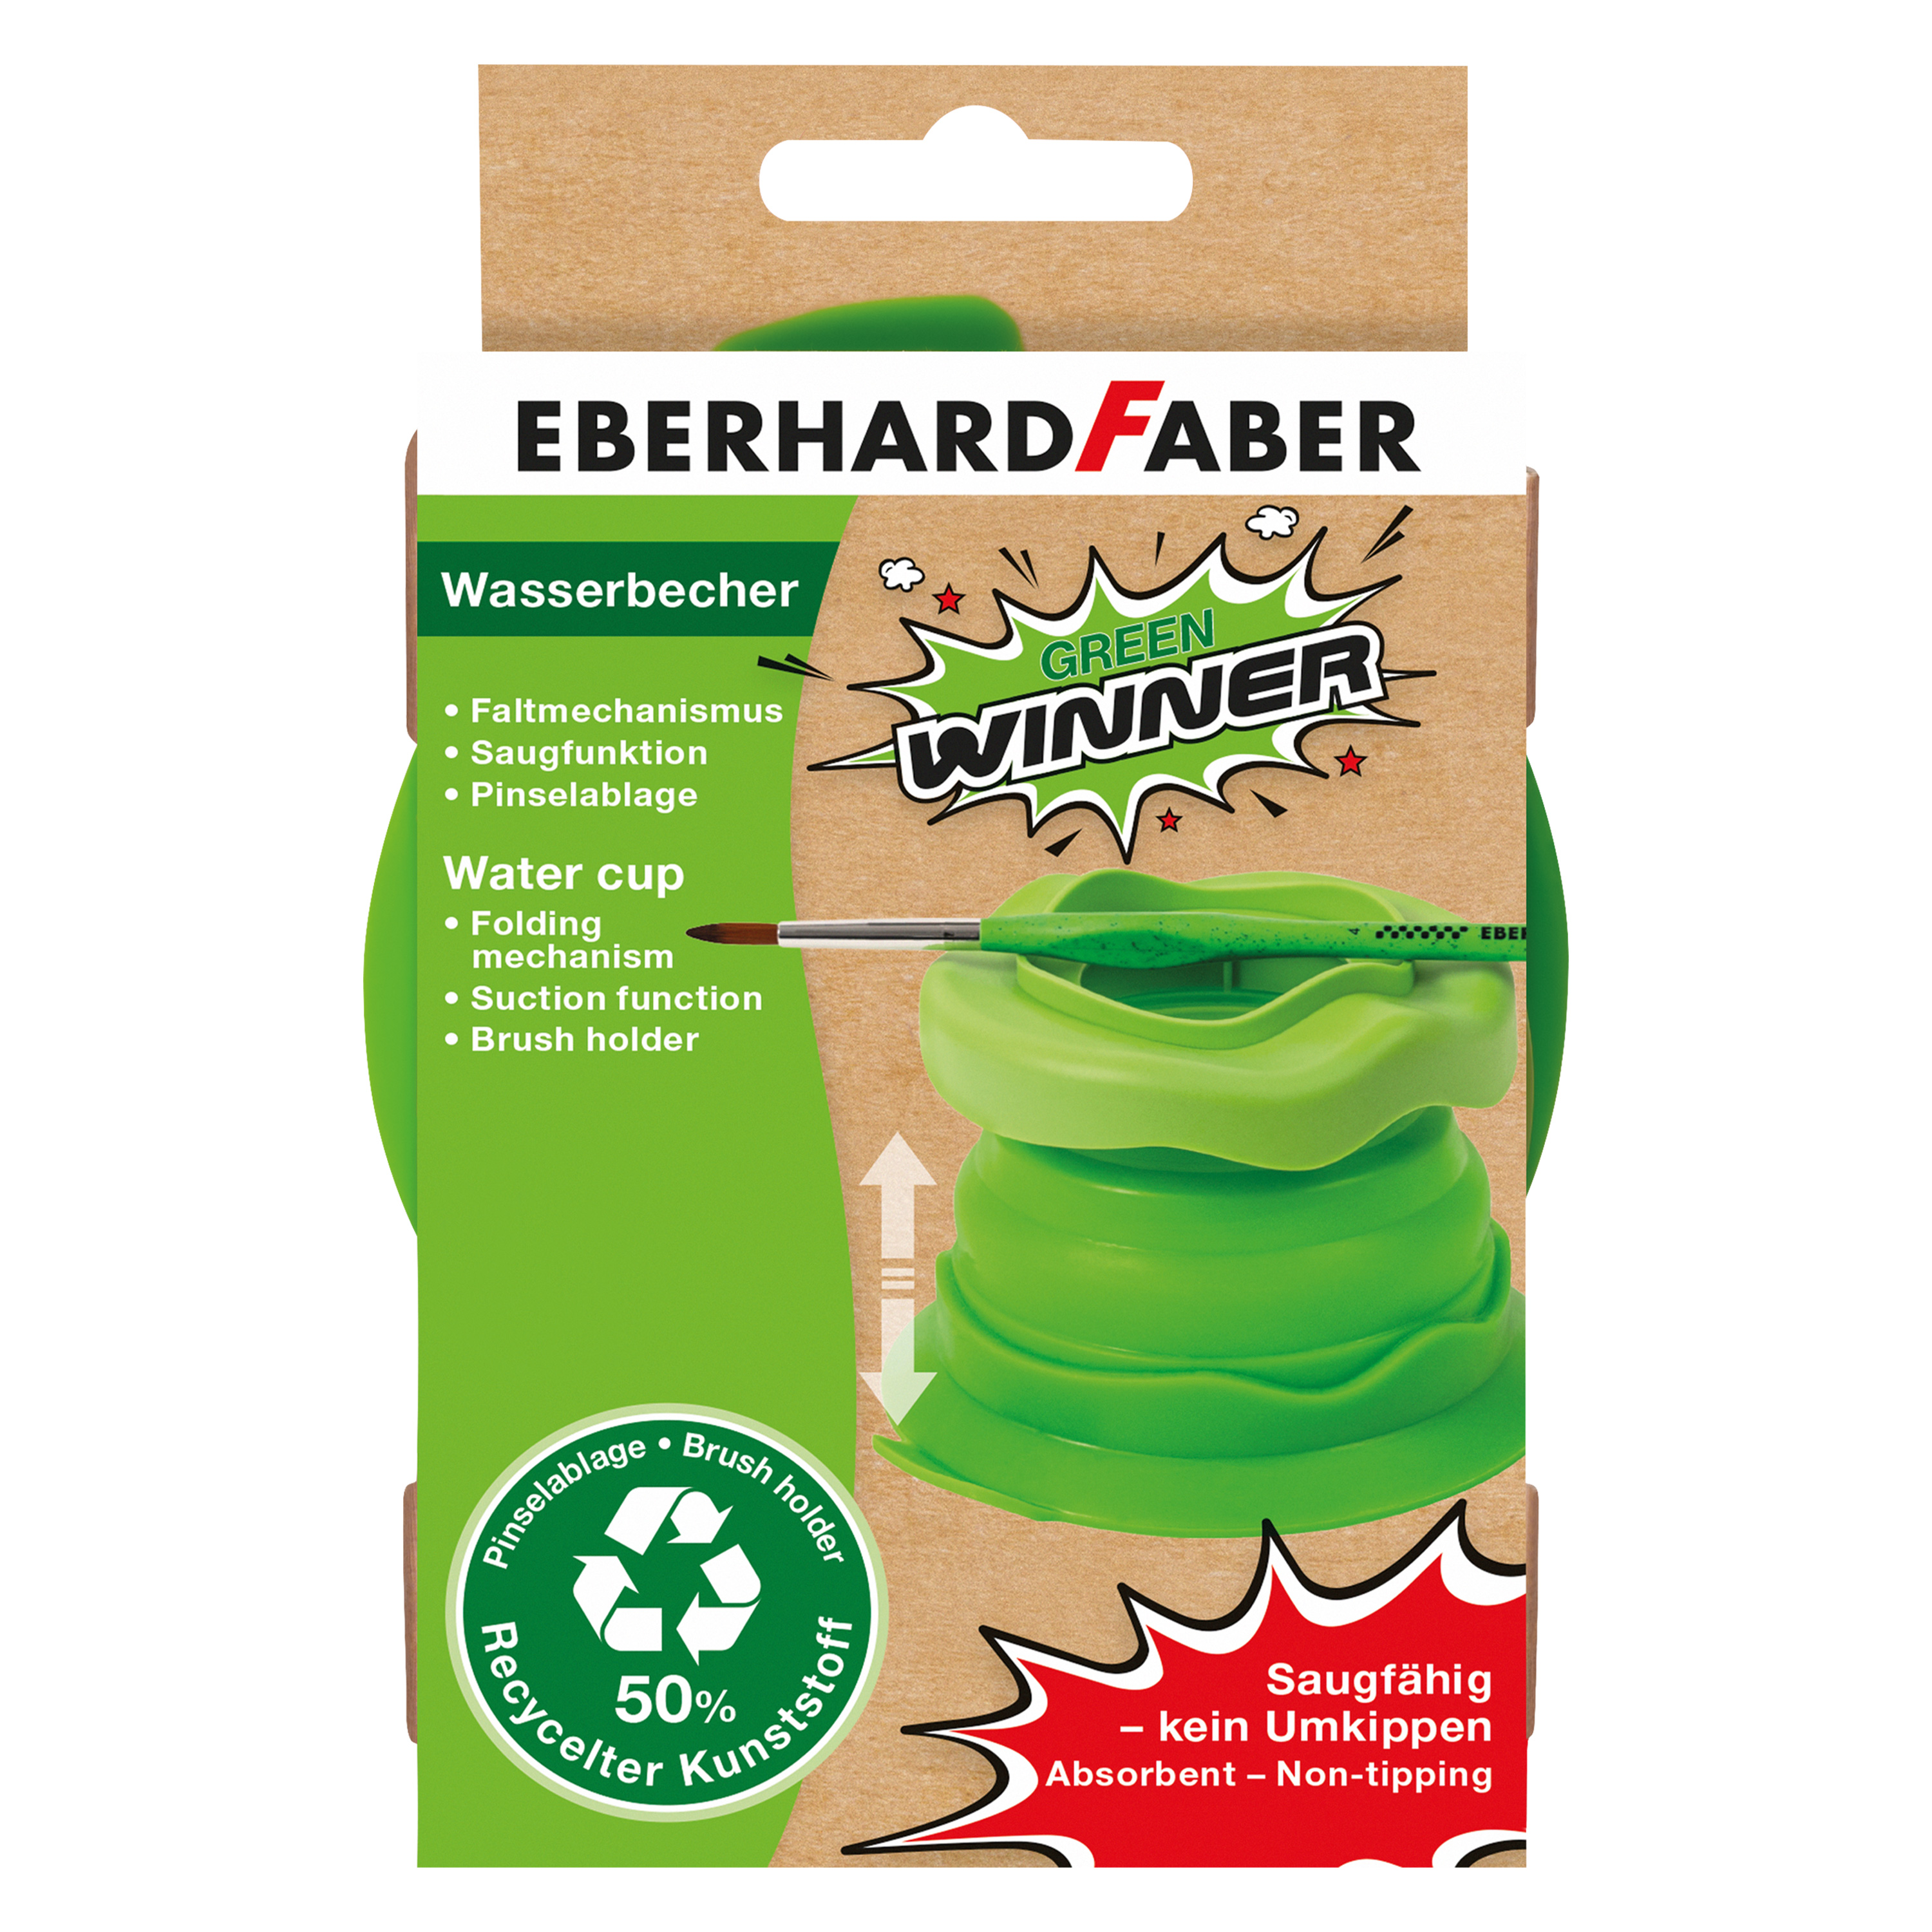 Eberhard Faber Wasserbecher 'Green Winner'